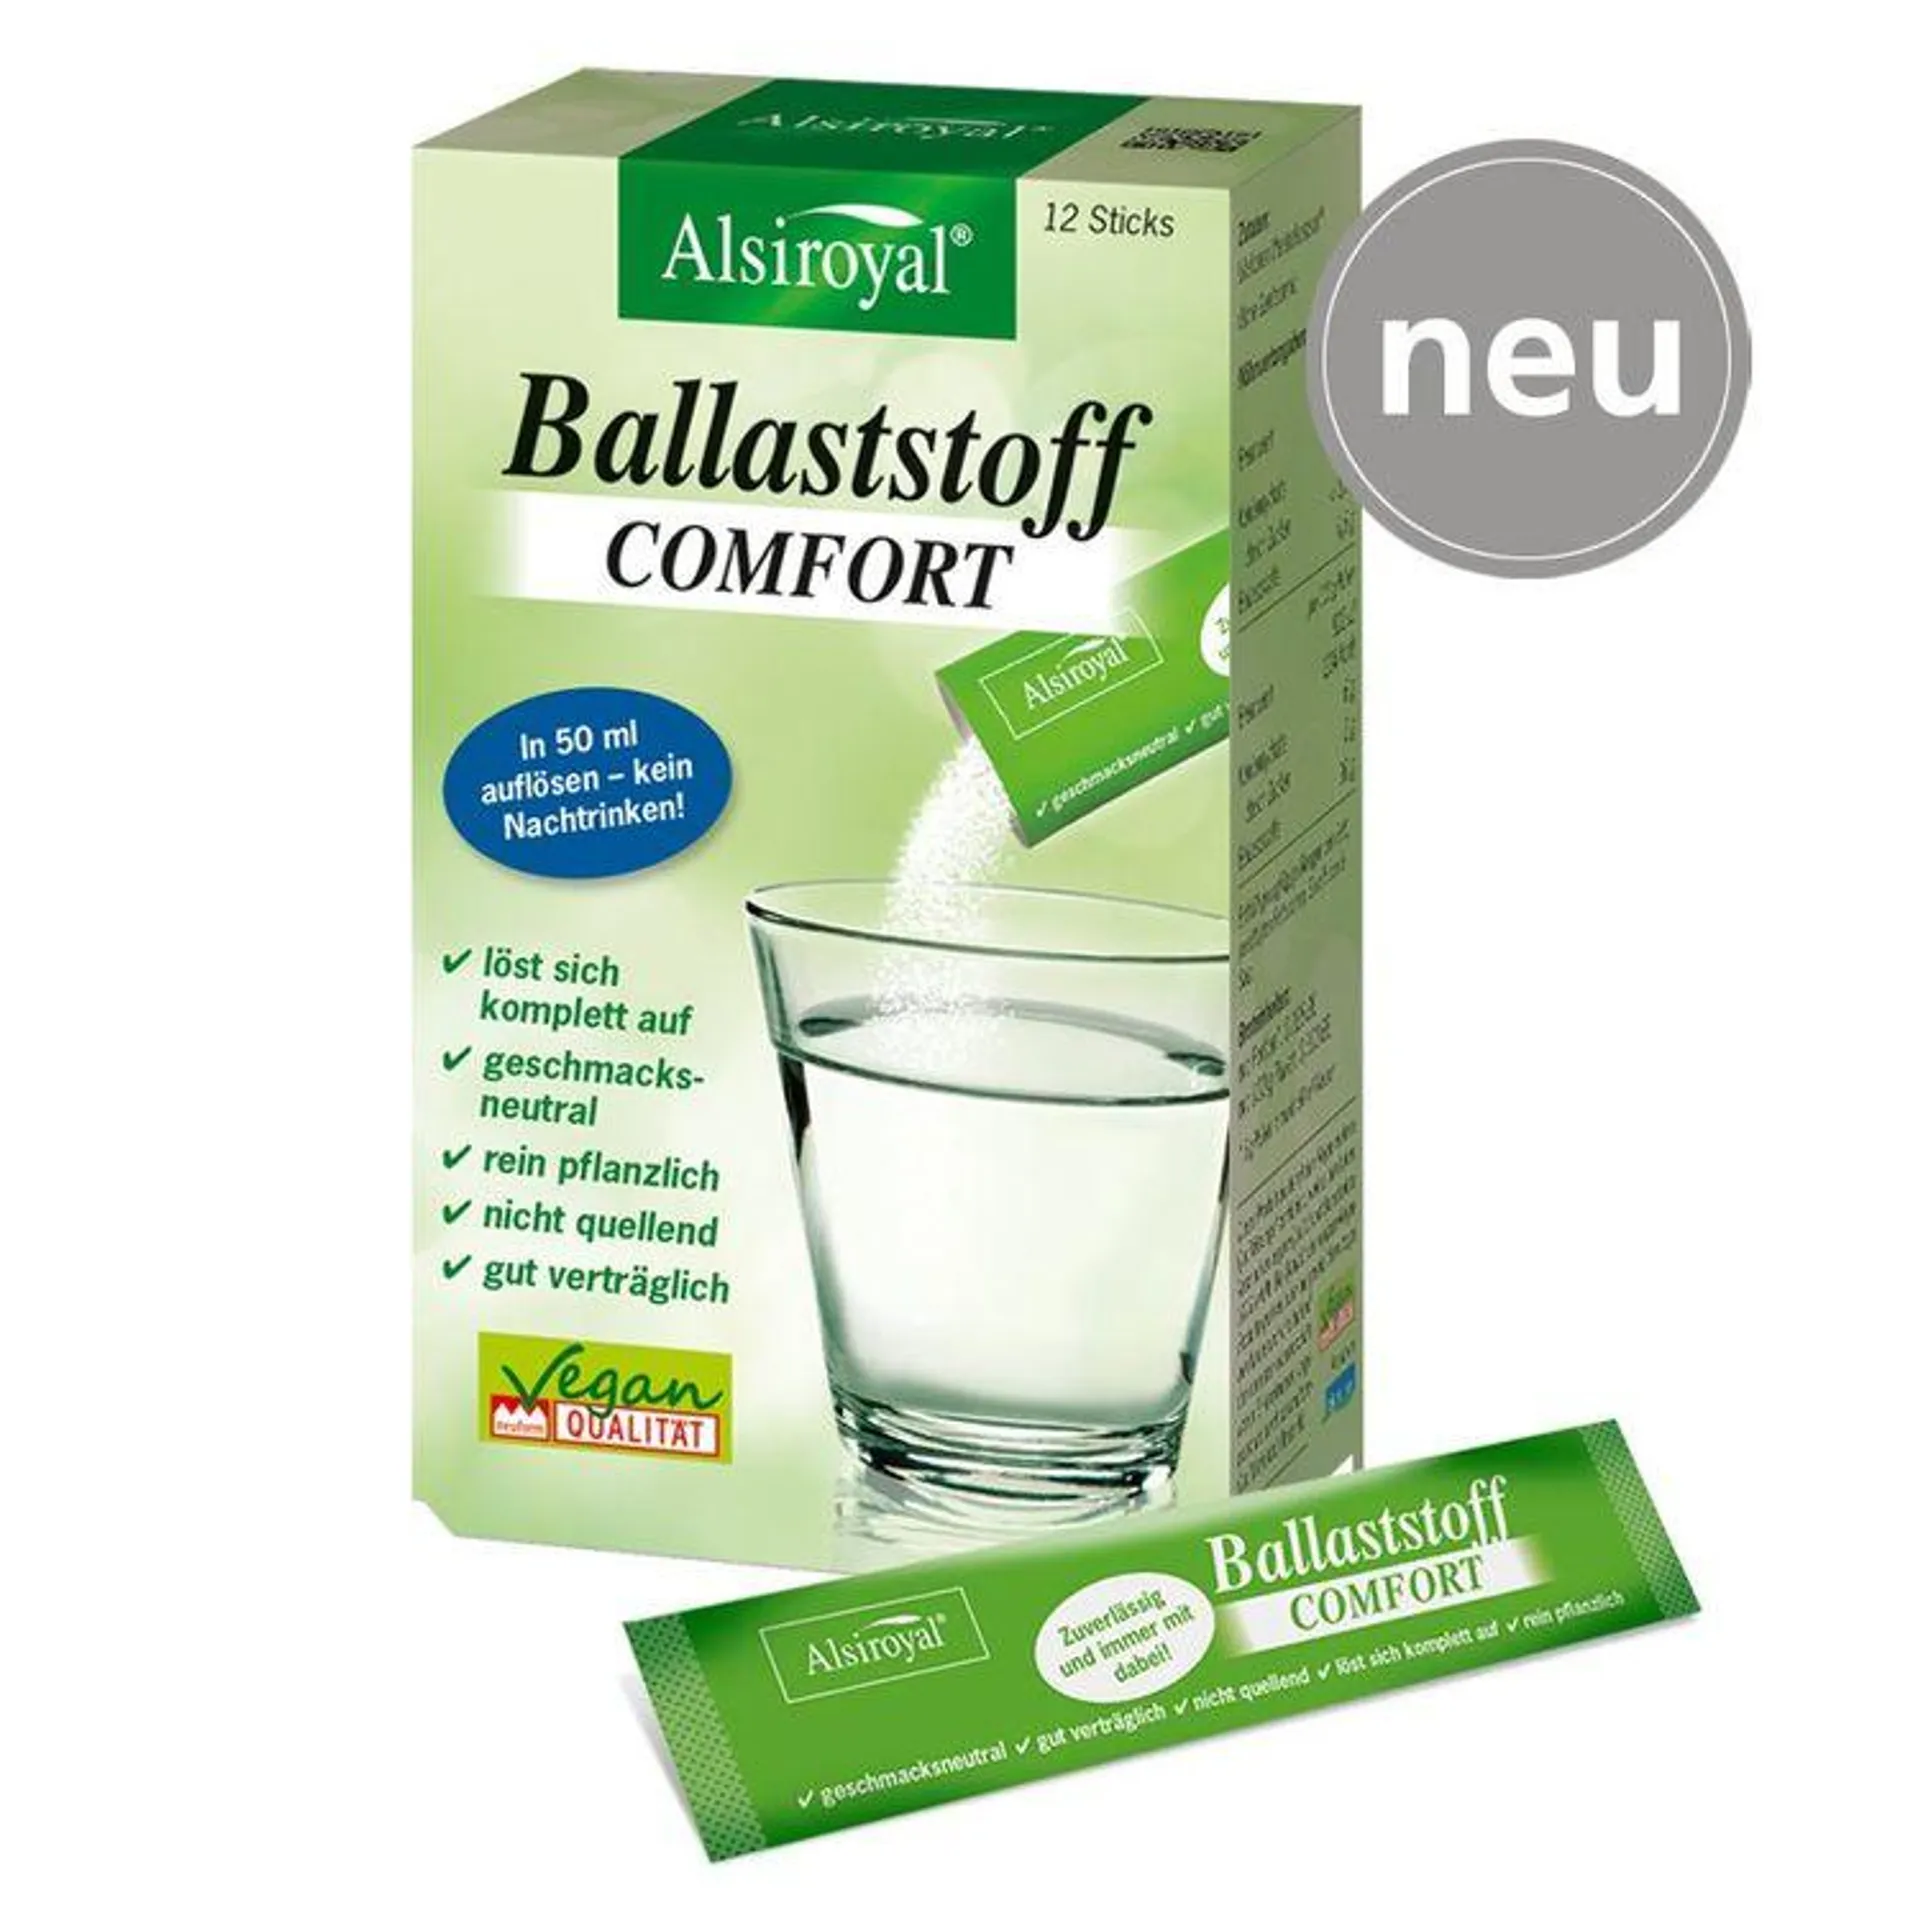 Alsiroyal - Ballaststoff Comfort 12 Sticks